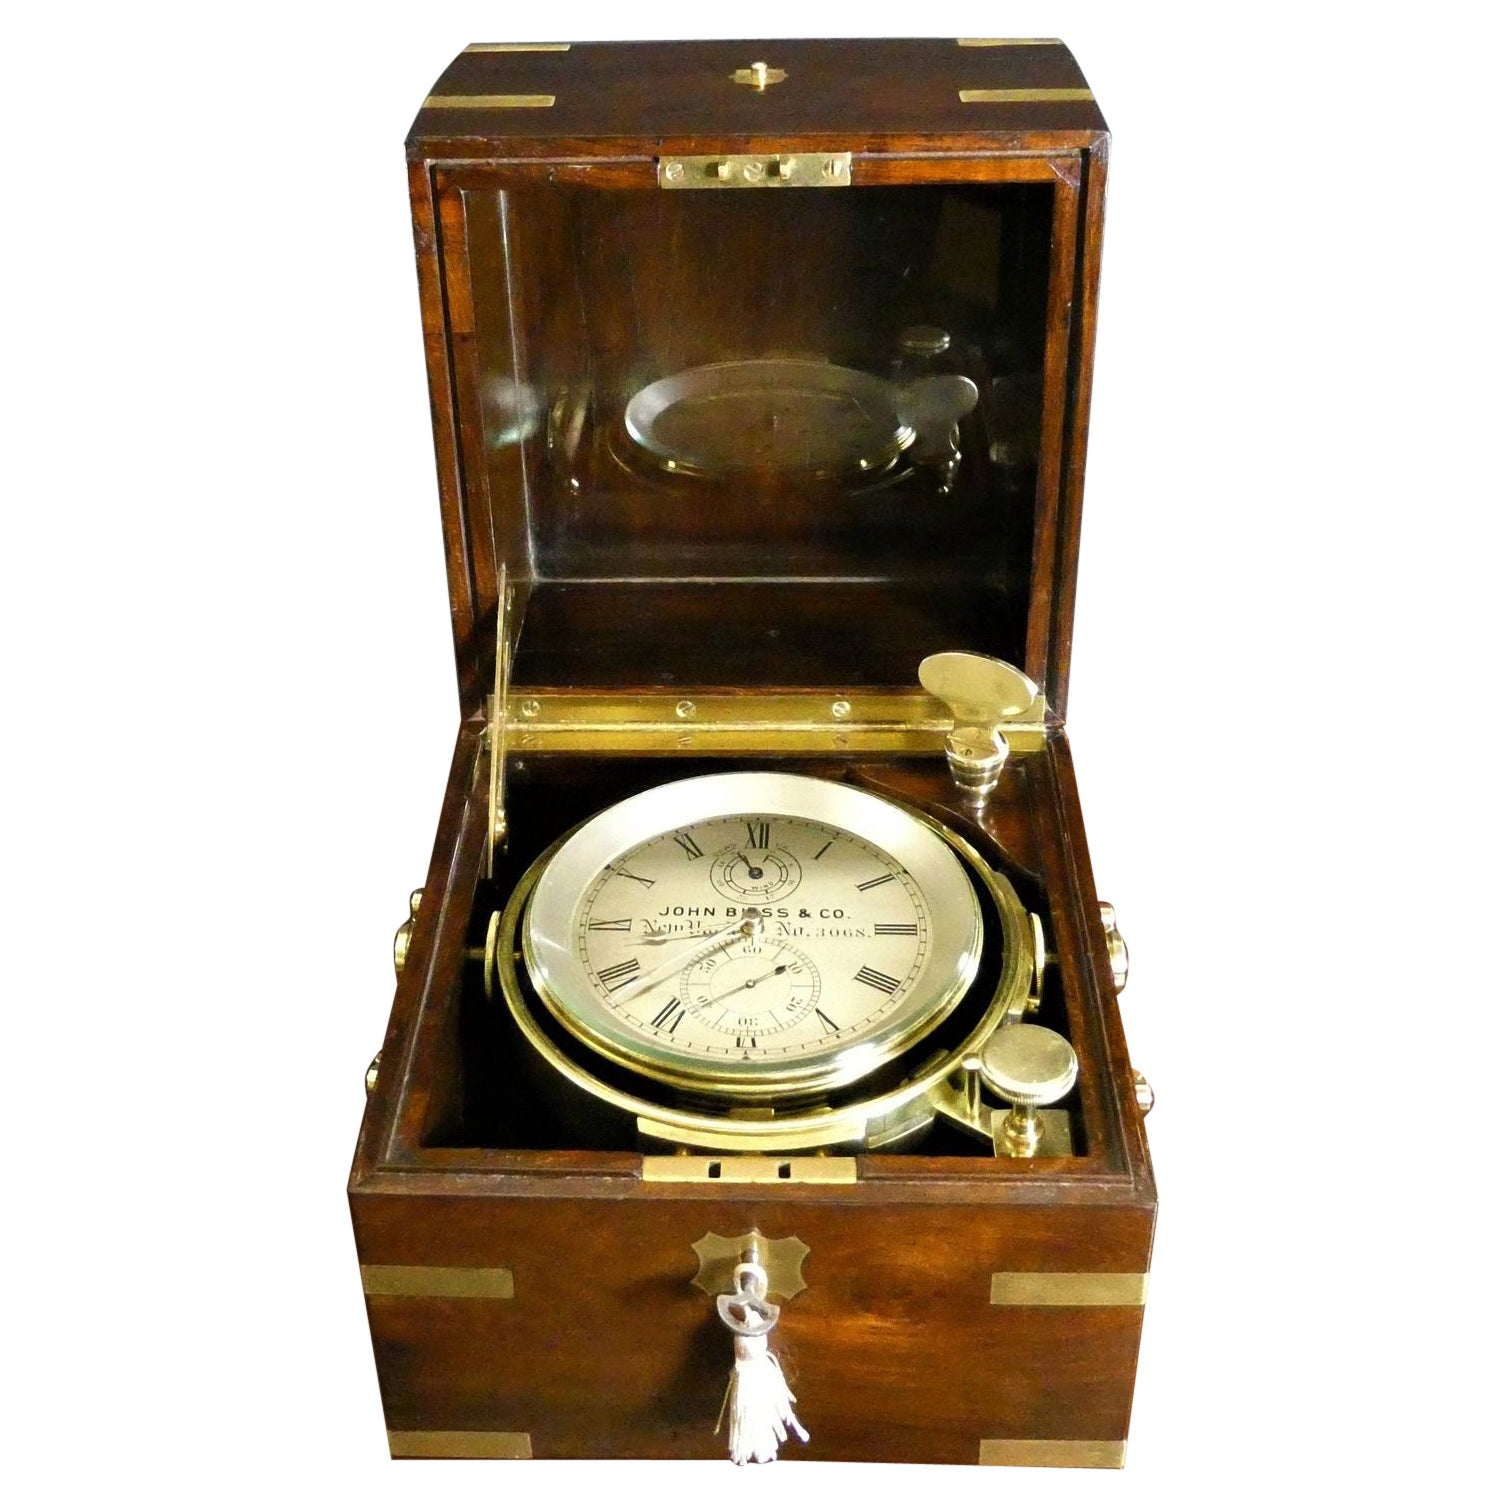 Chronomètre de marine à deux jours de John Bliss, New York. N° 3068